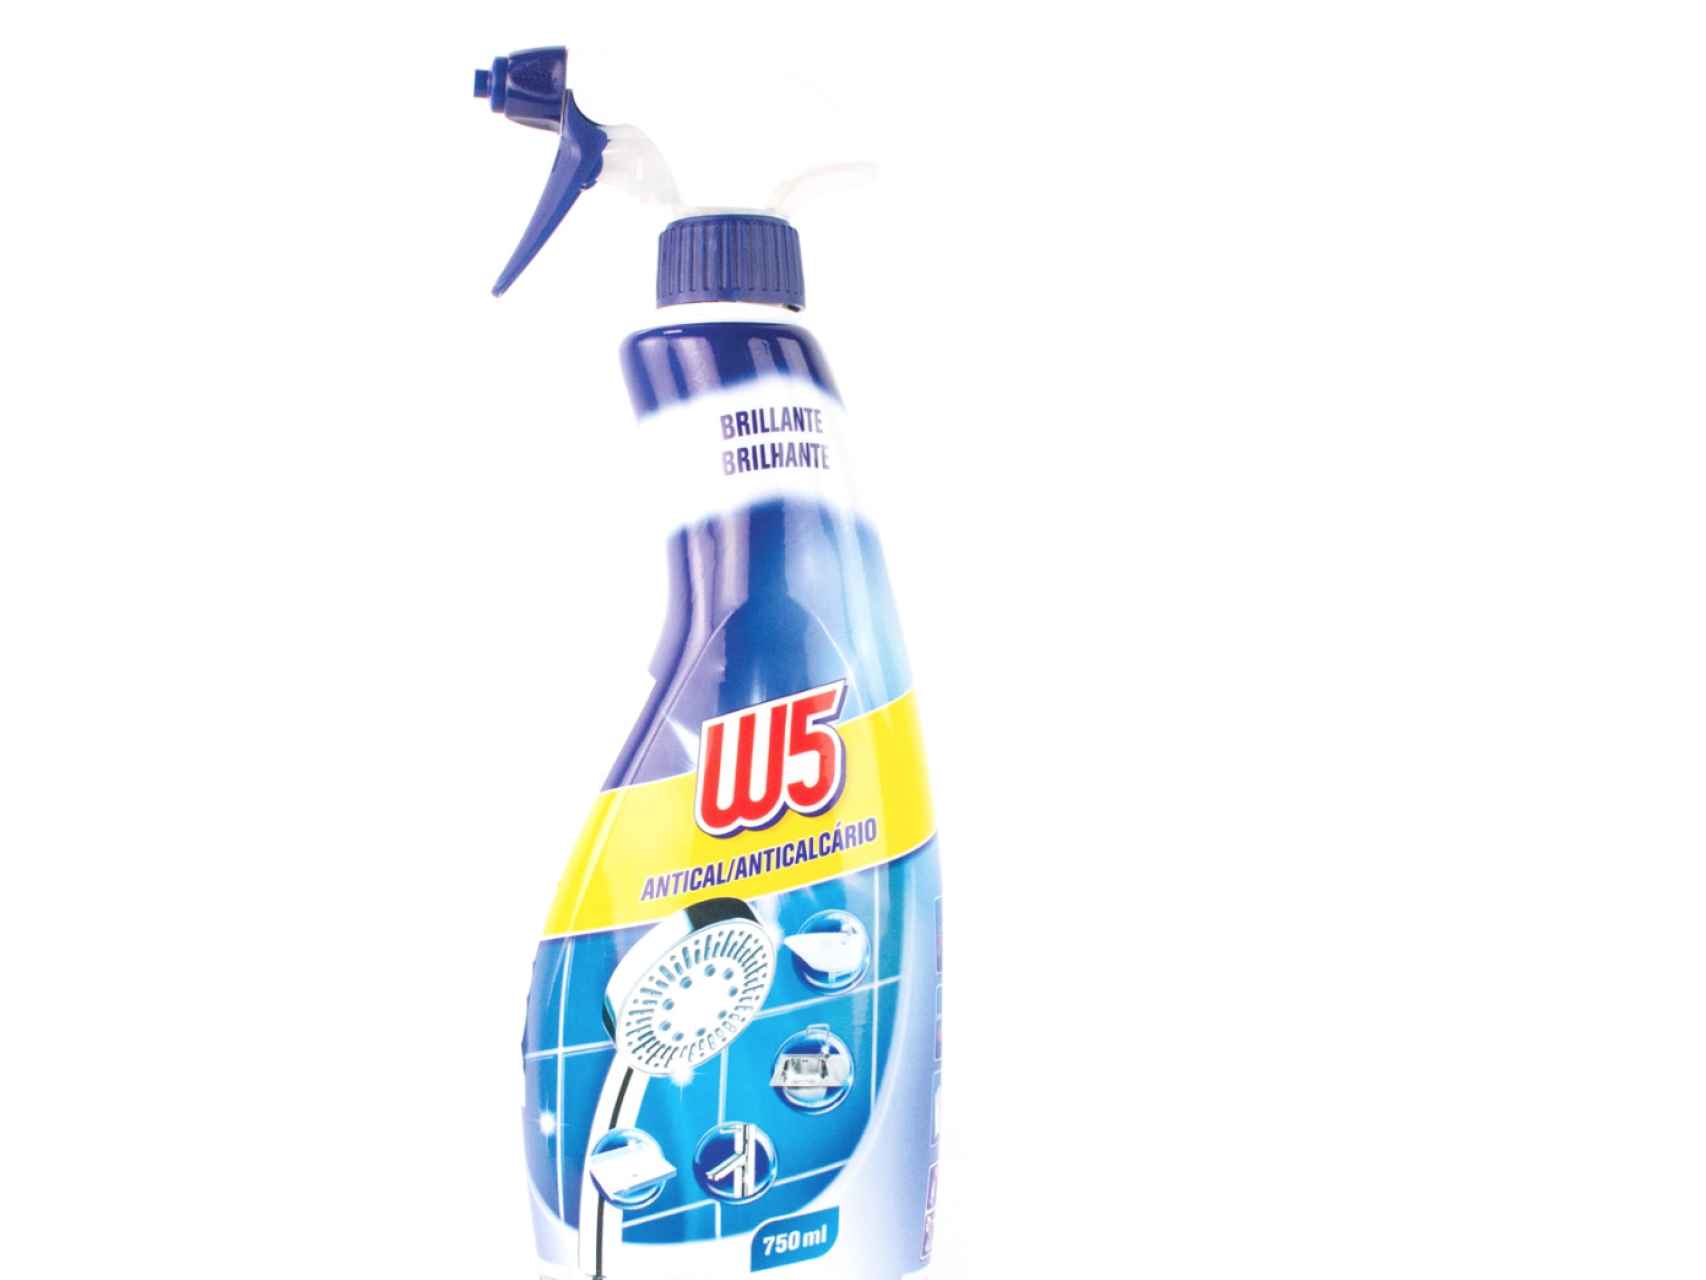 Limpiador de baño W5 spray antical de Lidl.